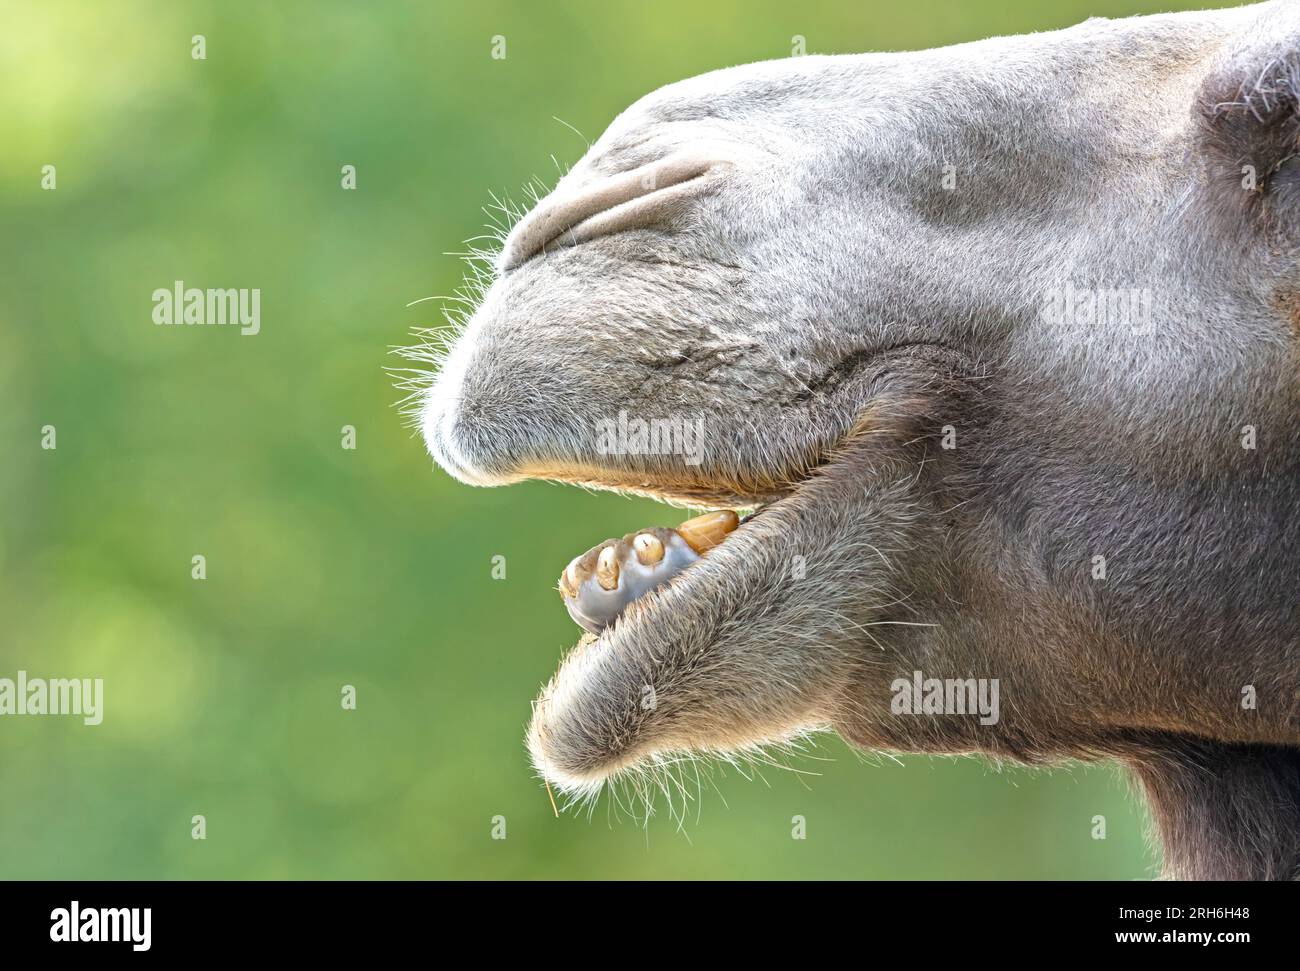 Gros plan d'un chameau adulte, fond vert Banque D'Images